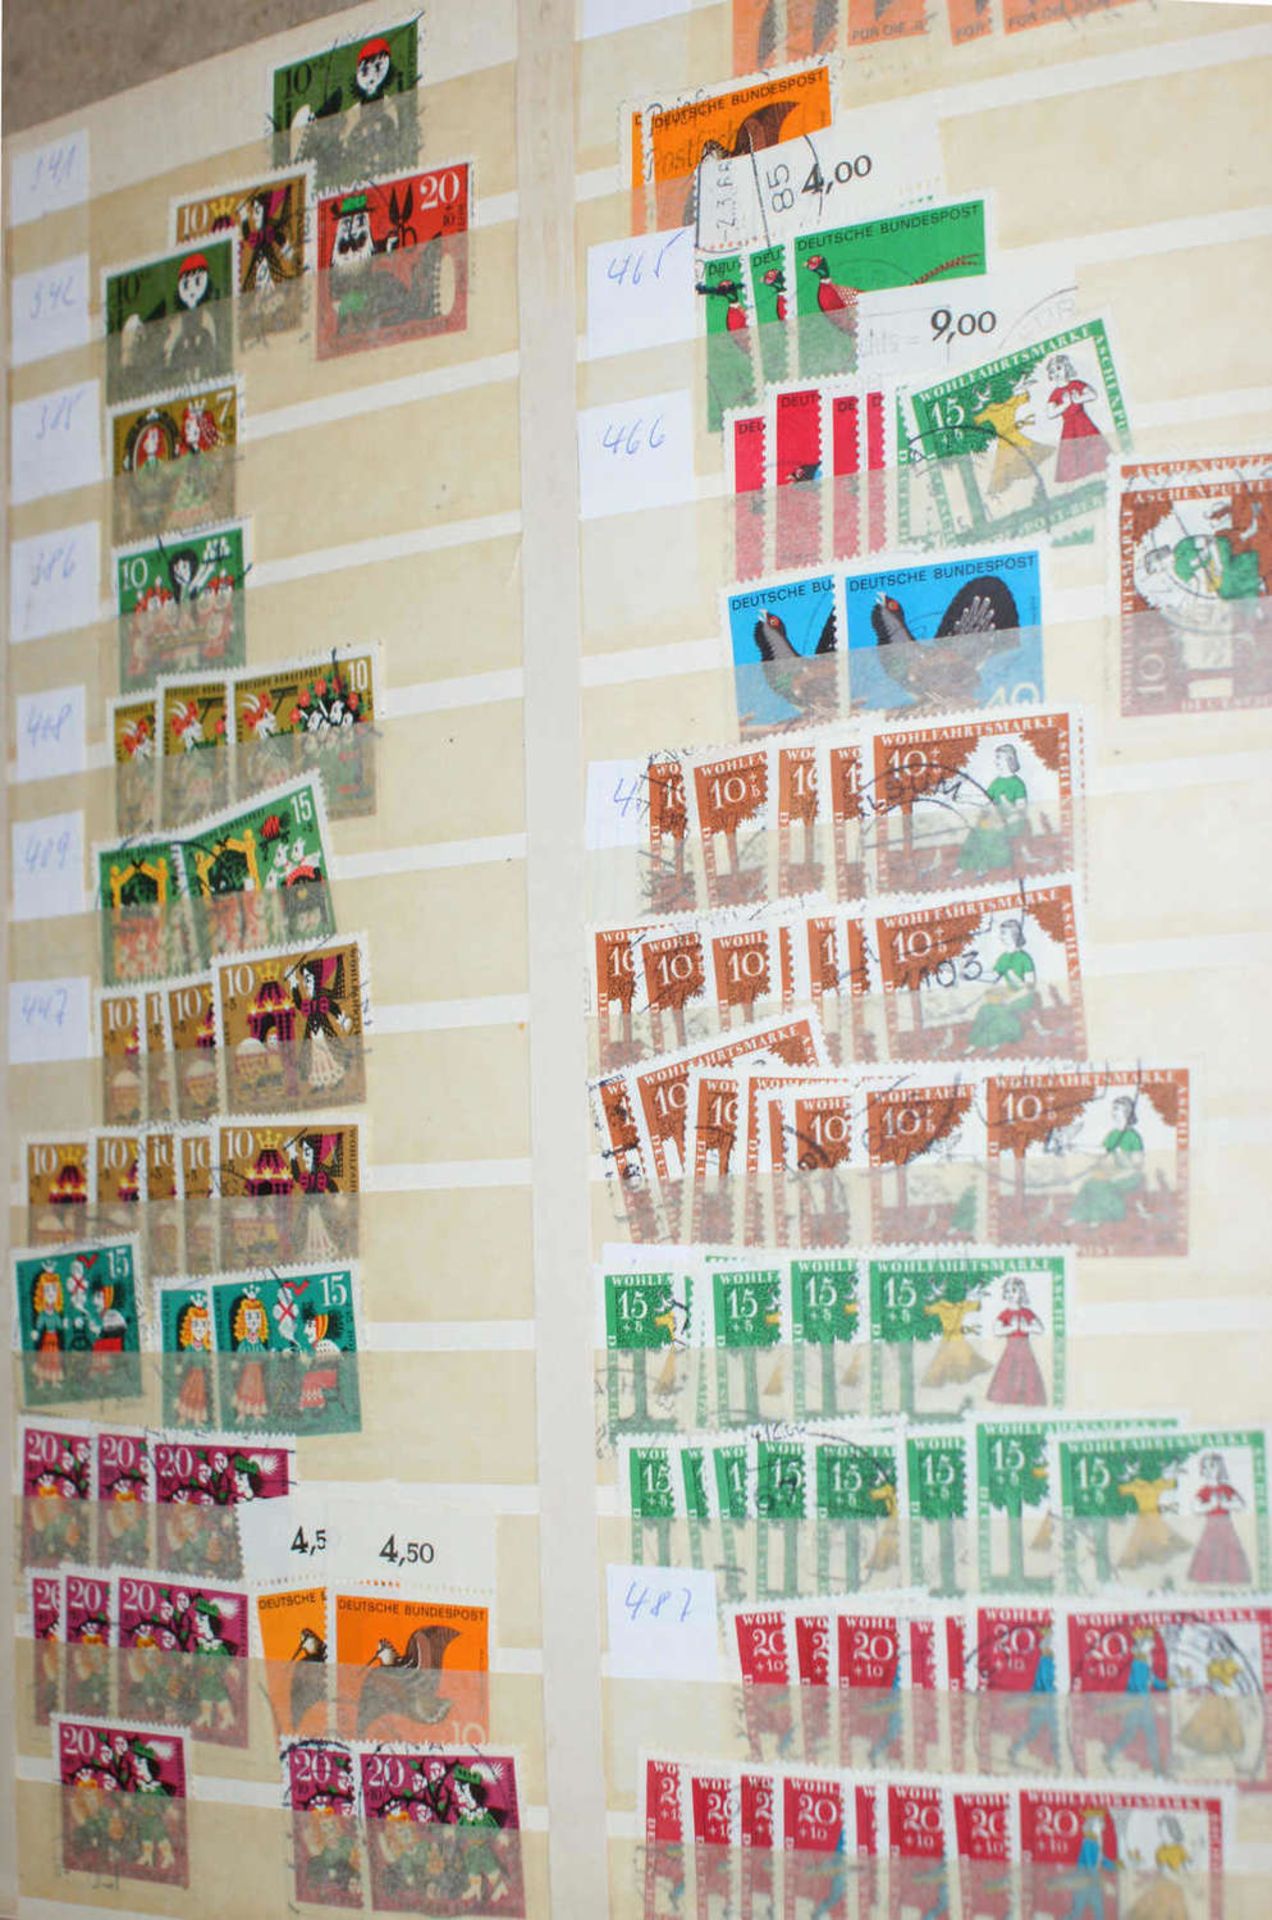 BRD - Briefmarken Dubletten Konvolut, bestehend aus 20 Alben, teilweise schlecht gelagert. - Image 4 of 6